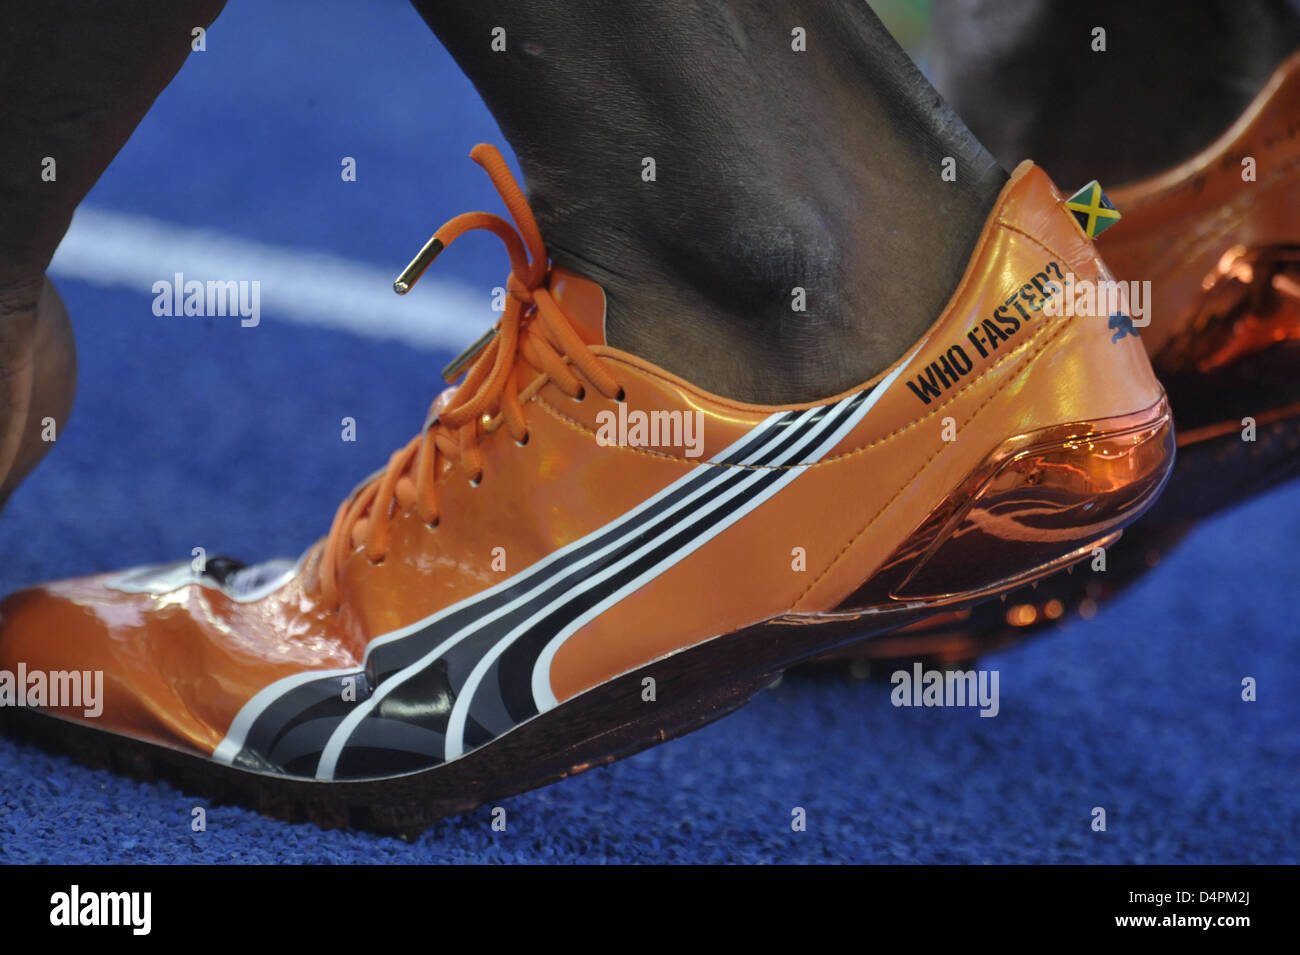 Los zapatos Jamaica Usain Bolt fotografiado antes a los hombres?s 100m final en XII Campeonato del Mundo IAAF de Atletismo en Berlín, Alemania, el 16 de de 2009. Tornillo